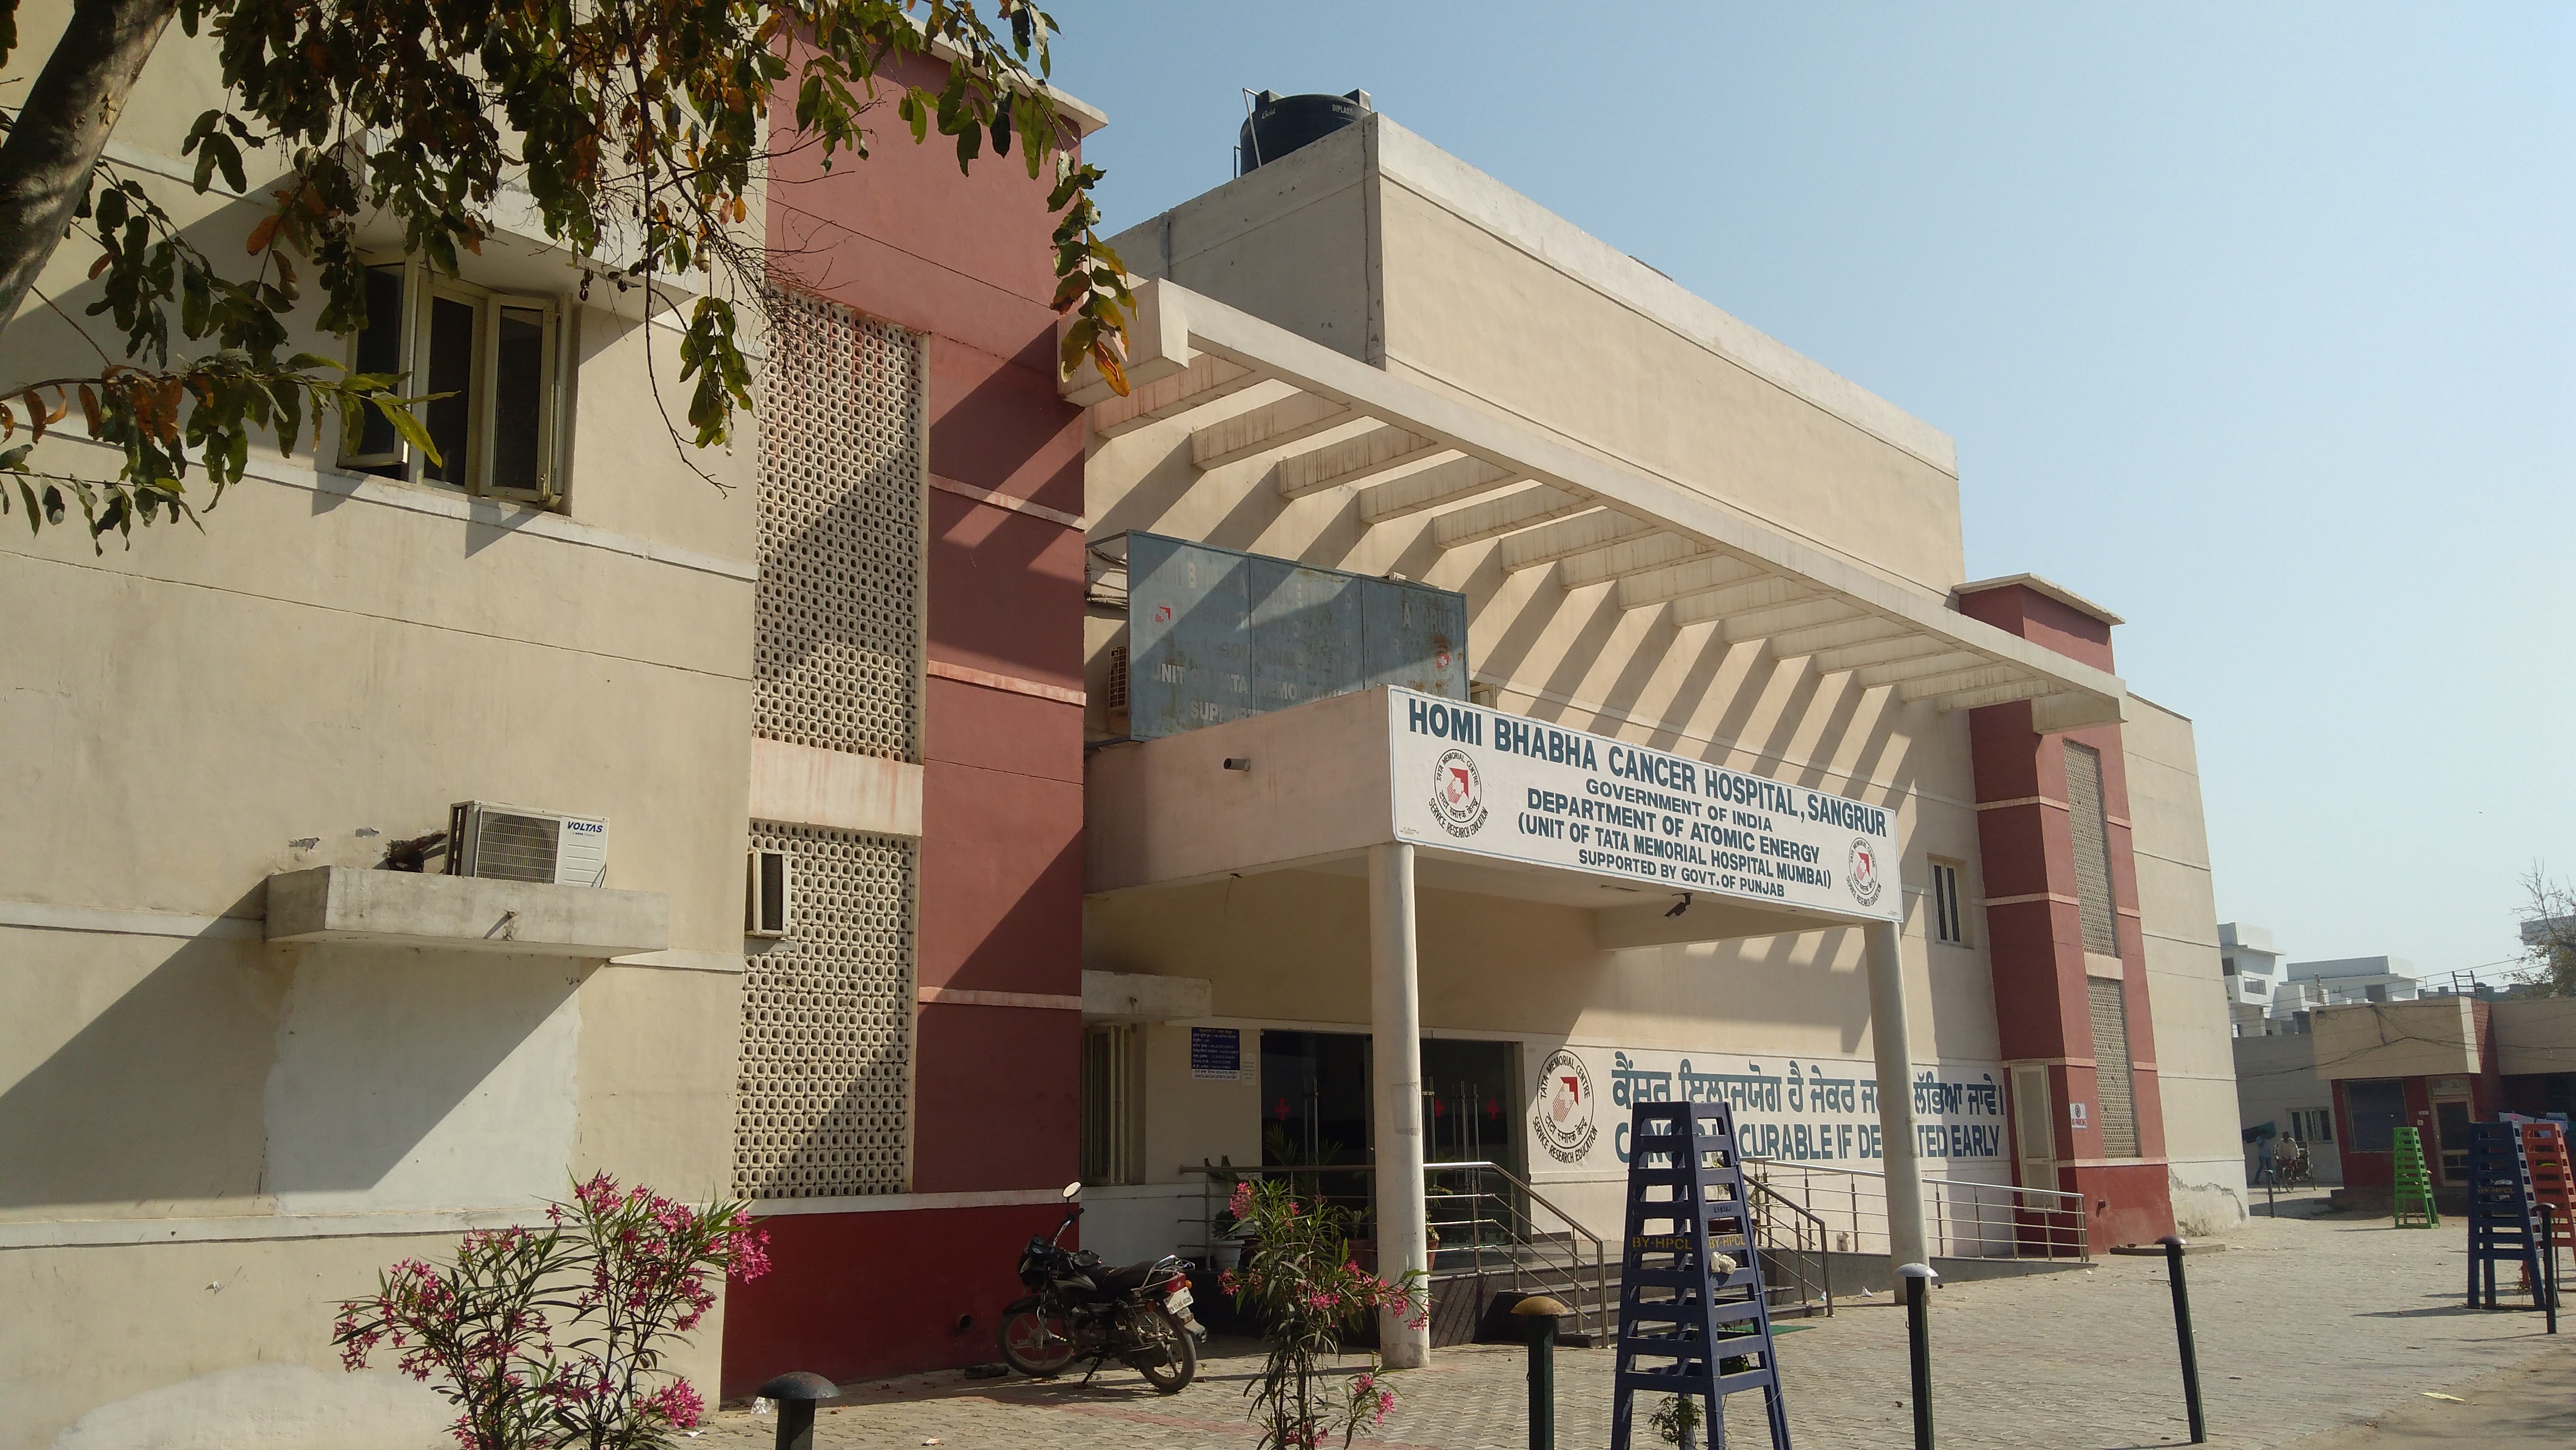 Homi Bhabha Cancer Hospital, Sangrur Image